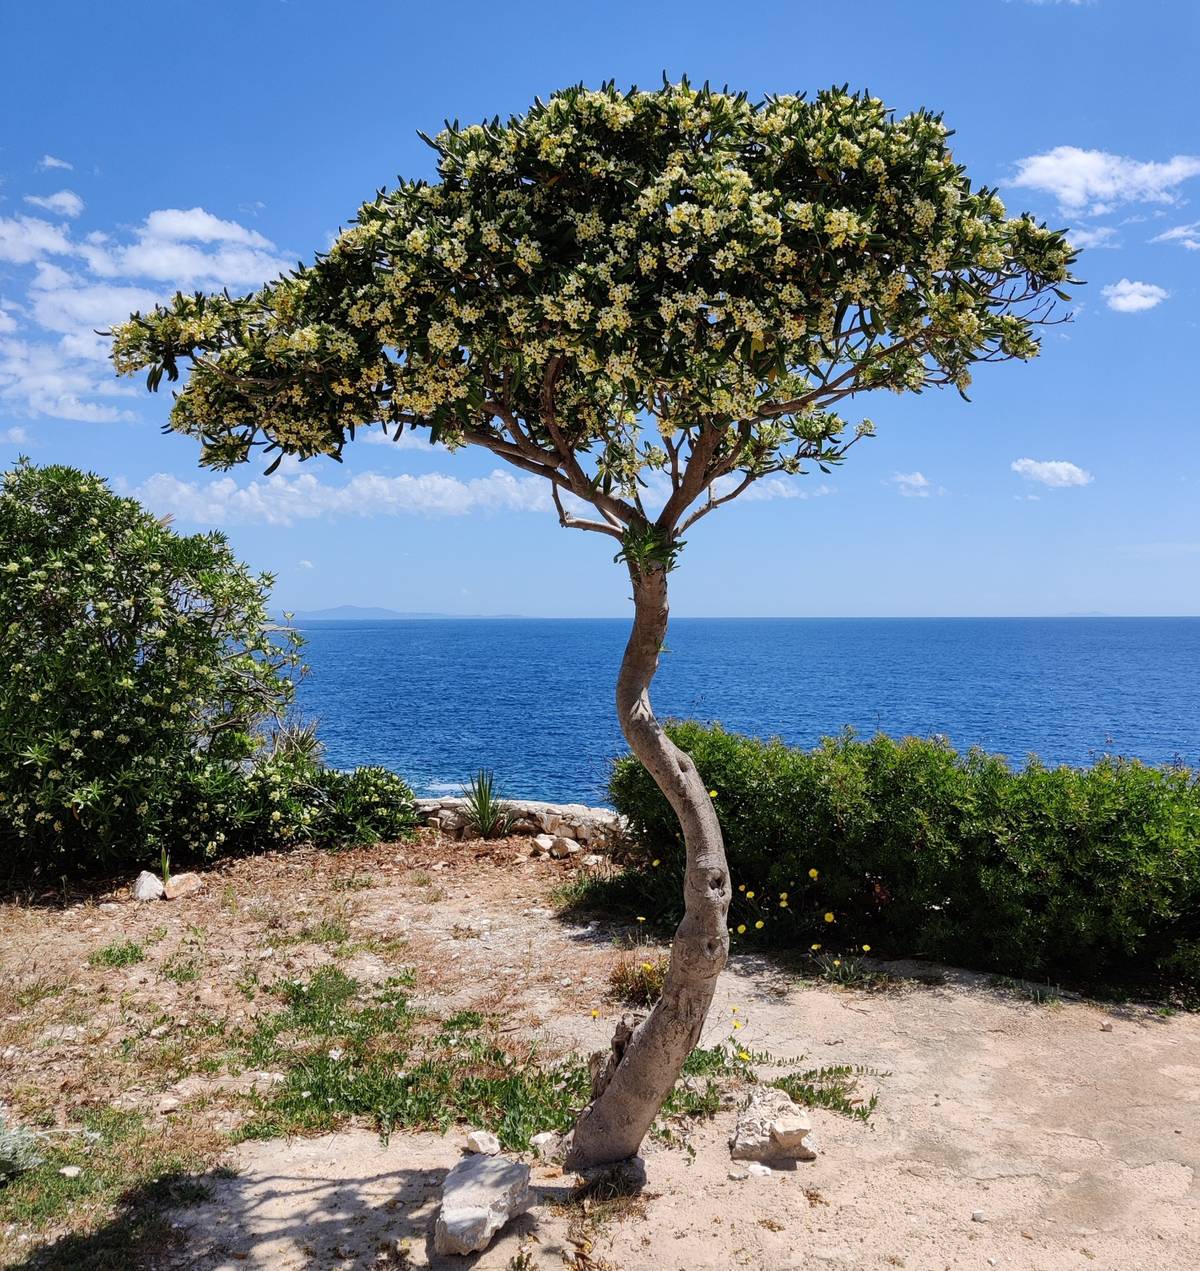 Beautiful tree at the coast